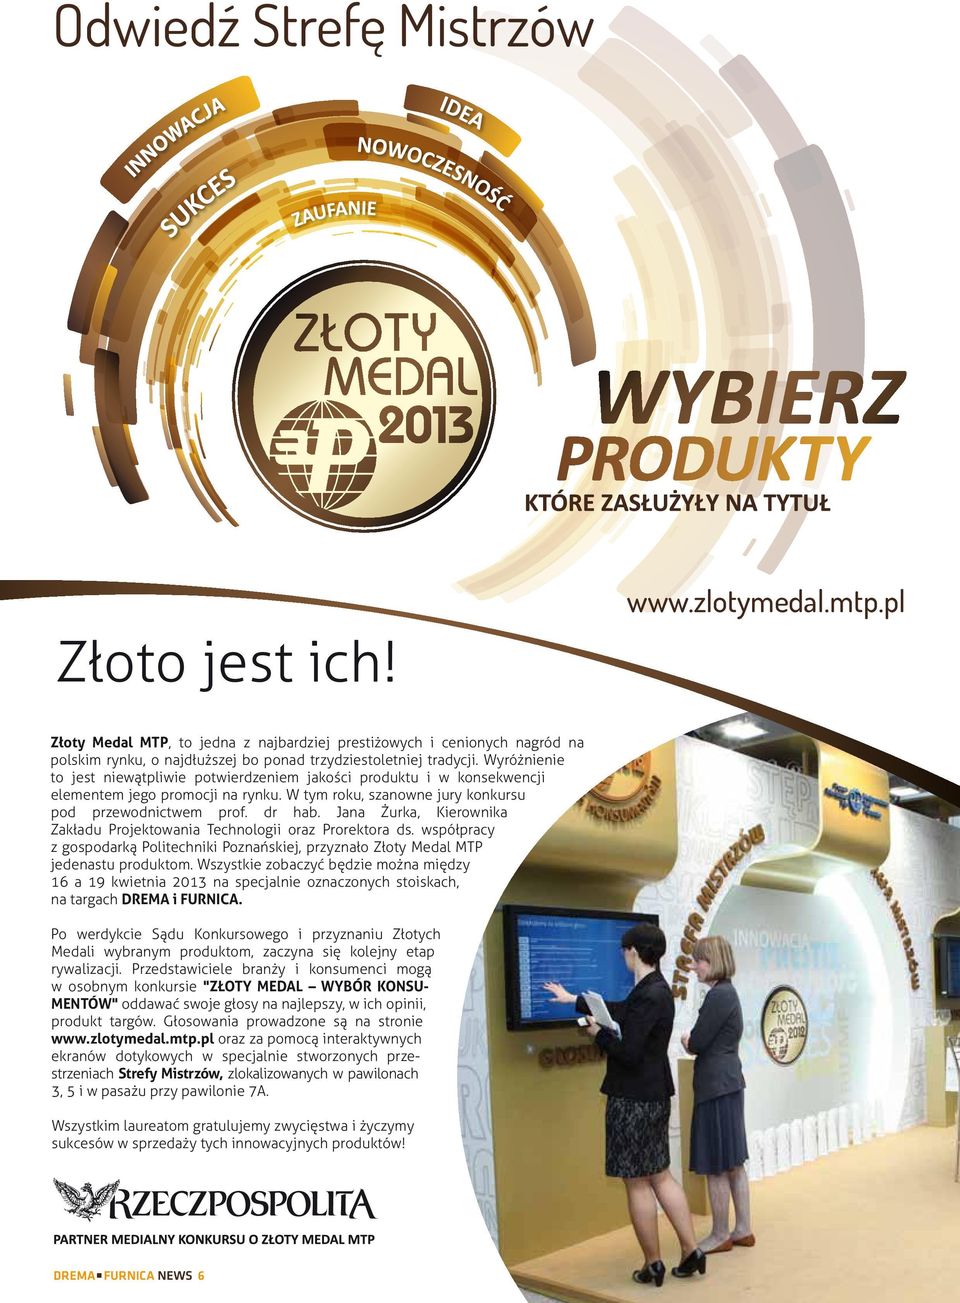 Jana Żurka, Kierownika Zakładu Projektowania Technologii oraz Prorektora ds. współpracy z gospodarką Politechniki Poznańskiej, przyznało Złoty Medal MTP jedenastu produktom.